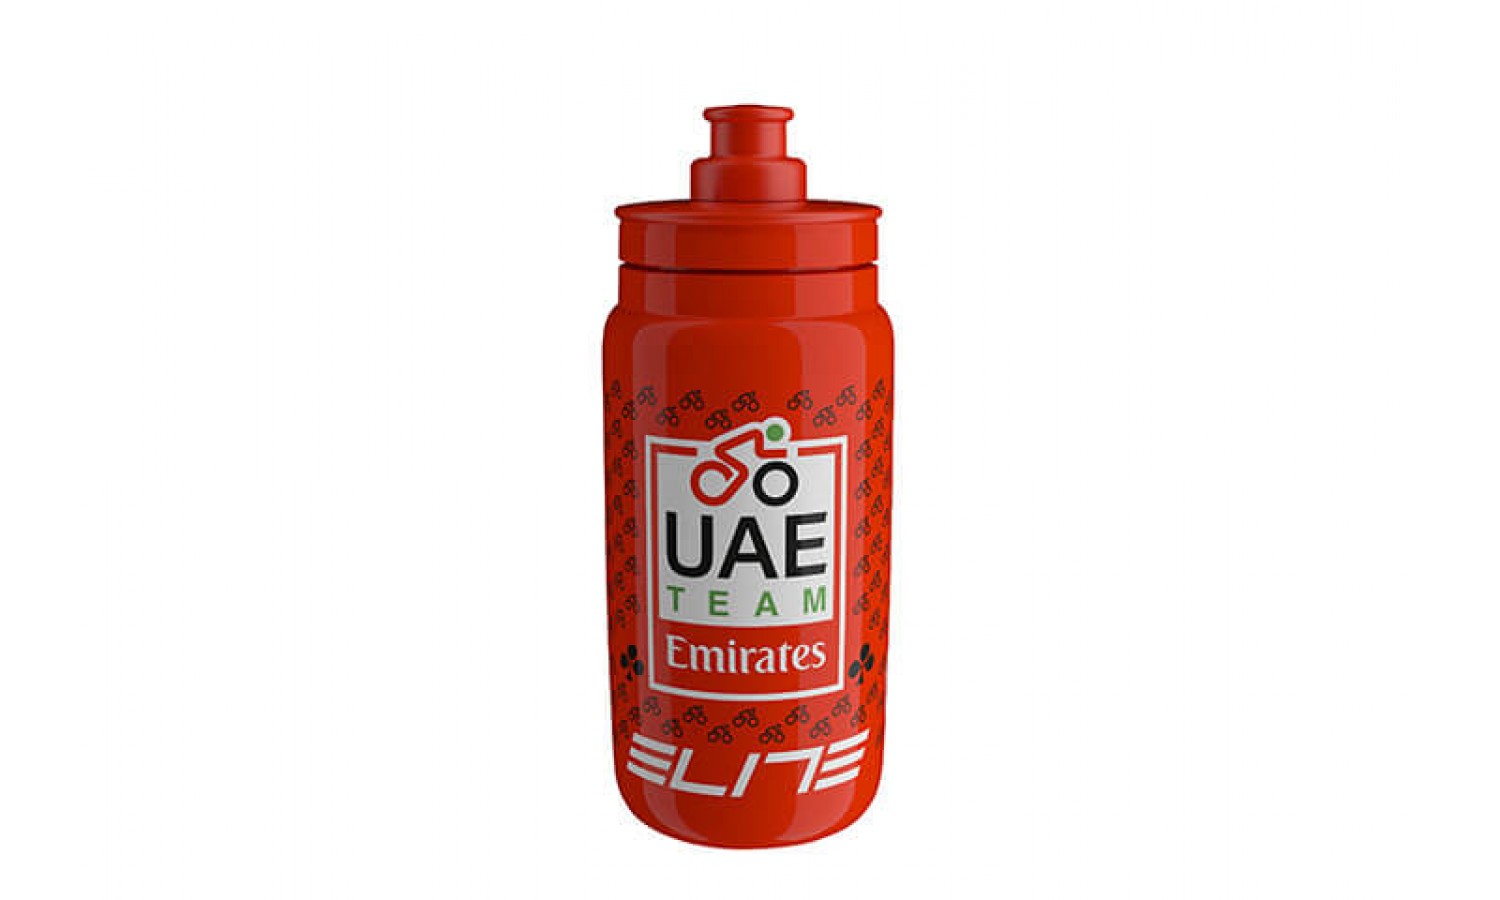 Suluk Elite Fly Team Uae  Emirates 550ml